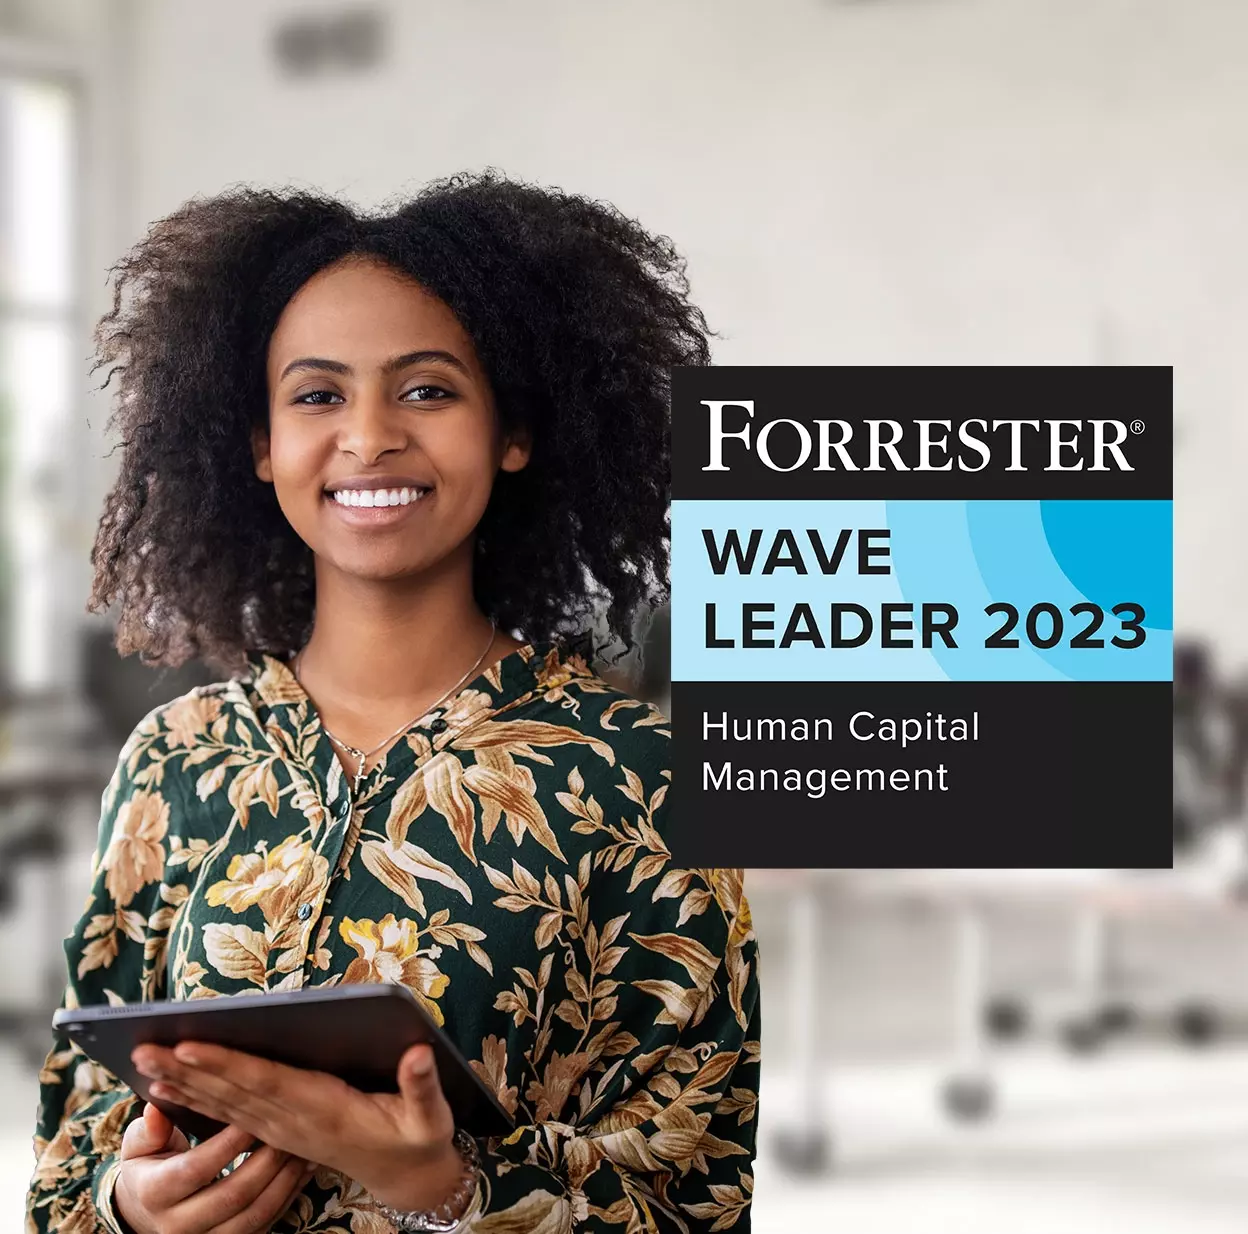 Forrester Wave Leader 2023: Human Capital Management